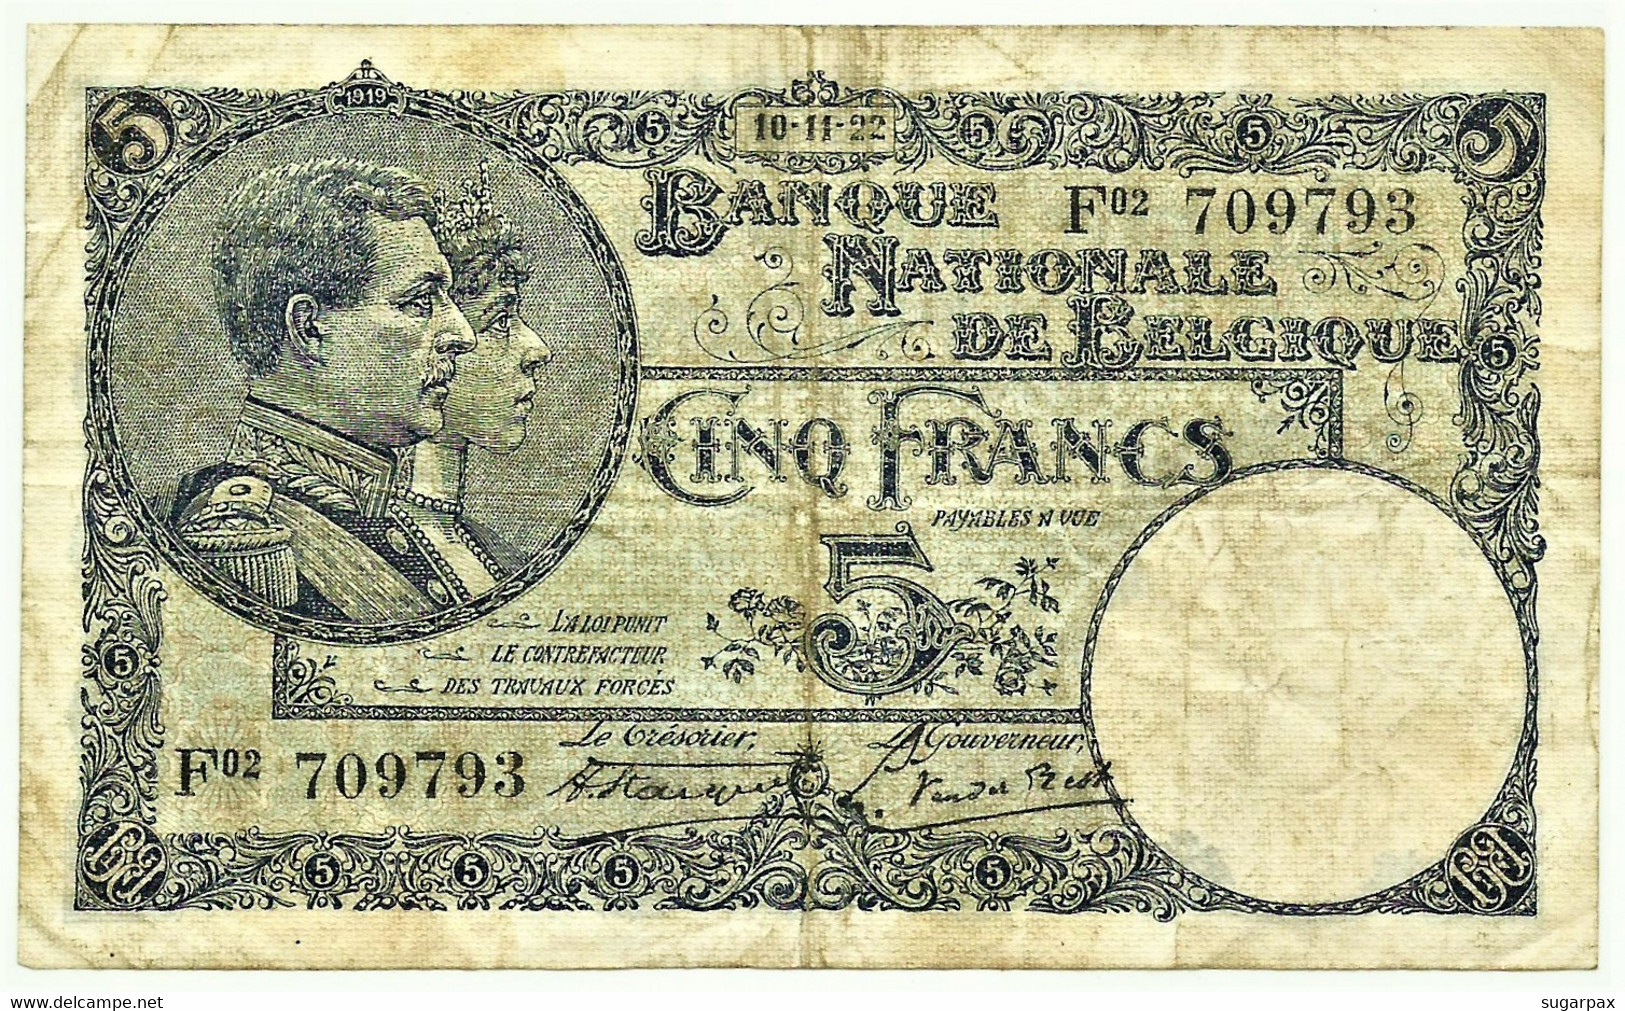 Belgium - 5 Francs - 10.11.1922 - Pick 93 - Serie F 02 - King Albert & Queen Elizabeth - Belgie Belgique - 5 Francos